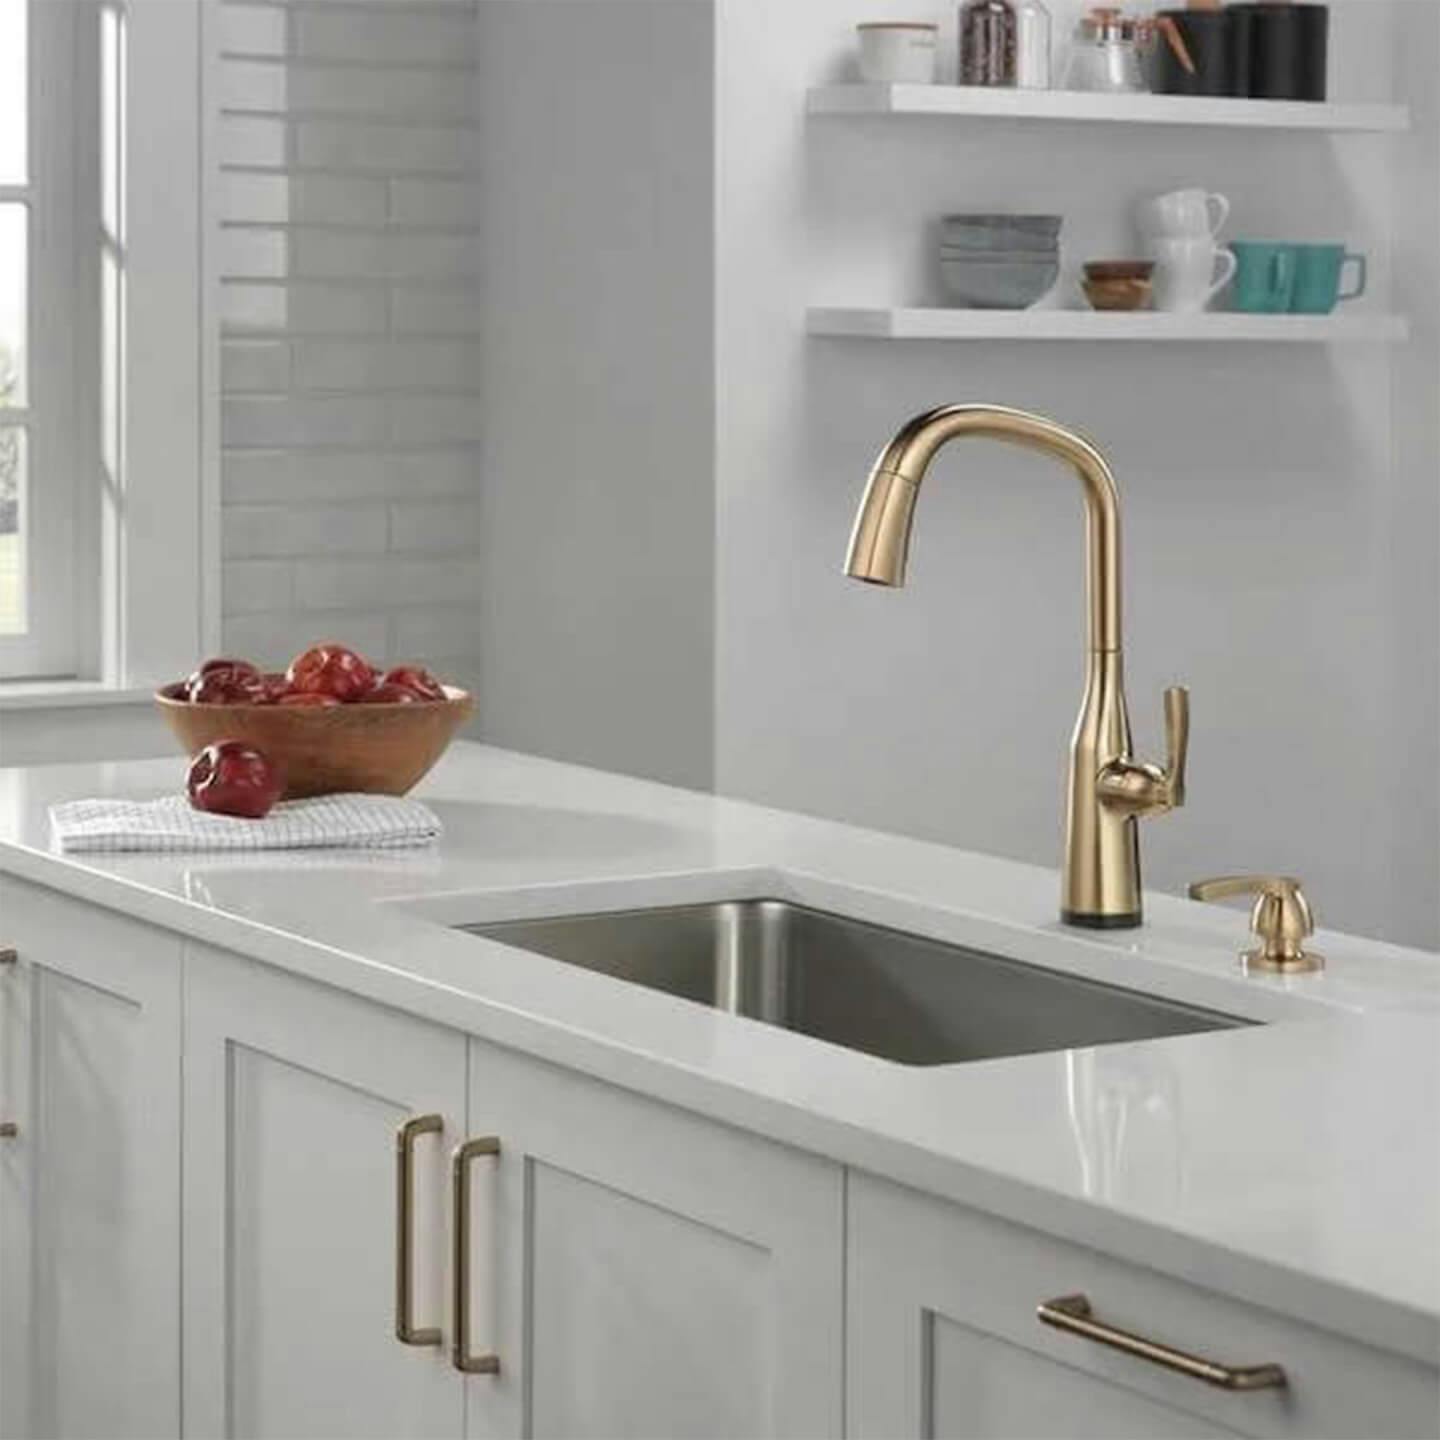 Industrial Bronze faucet in kitchen  